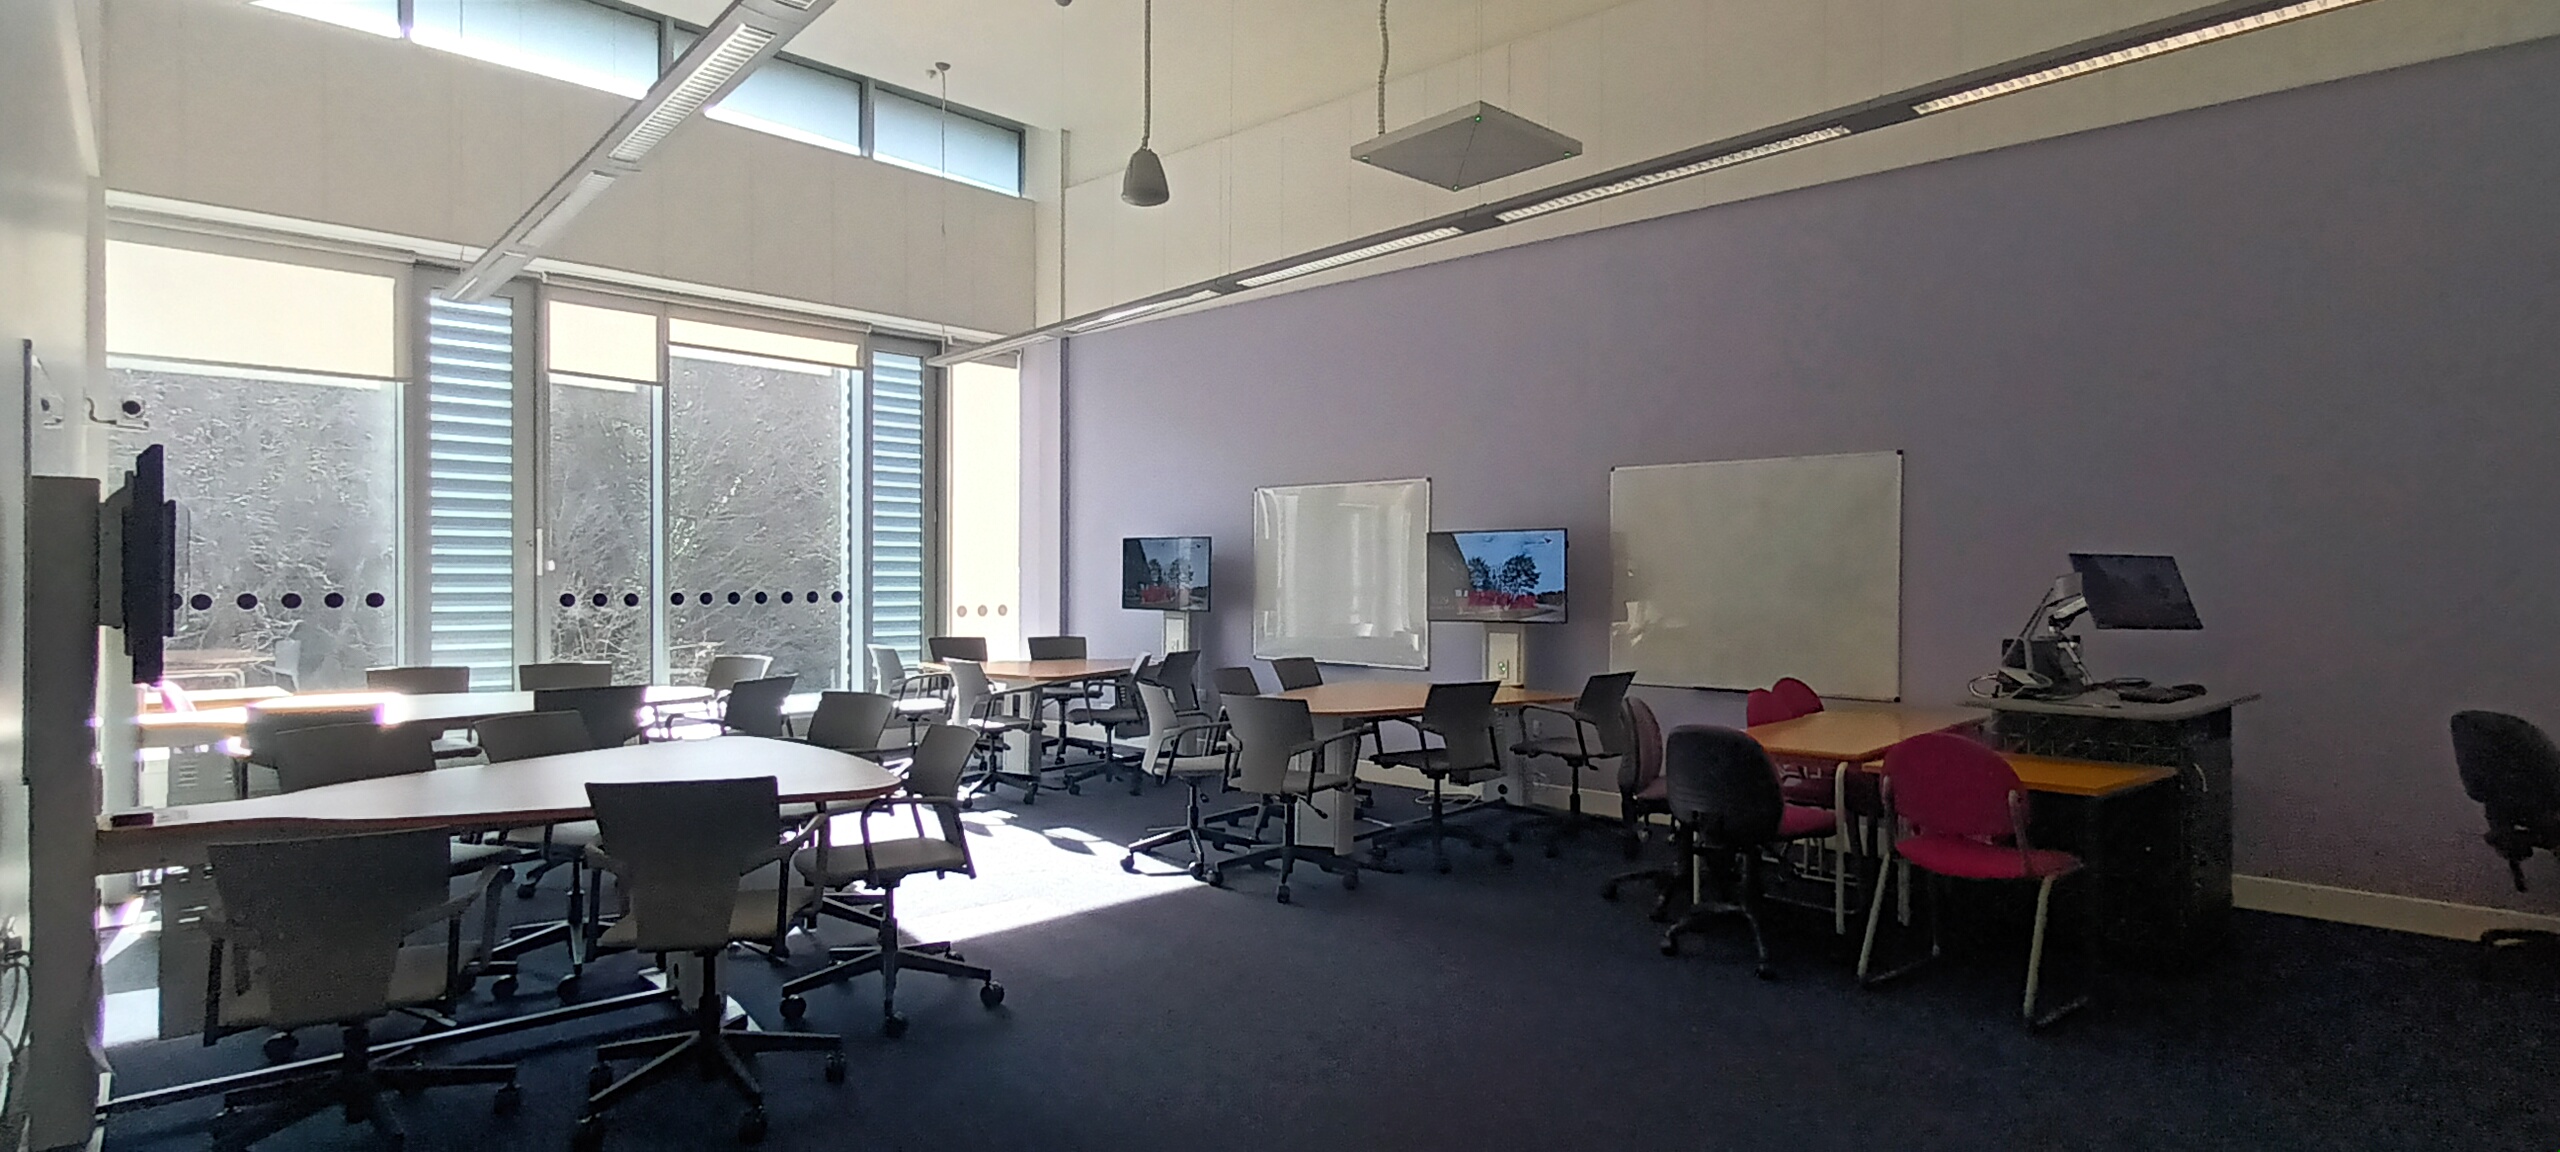 Photo of teaching studio